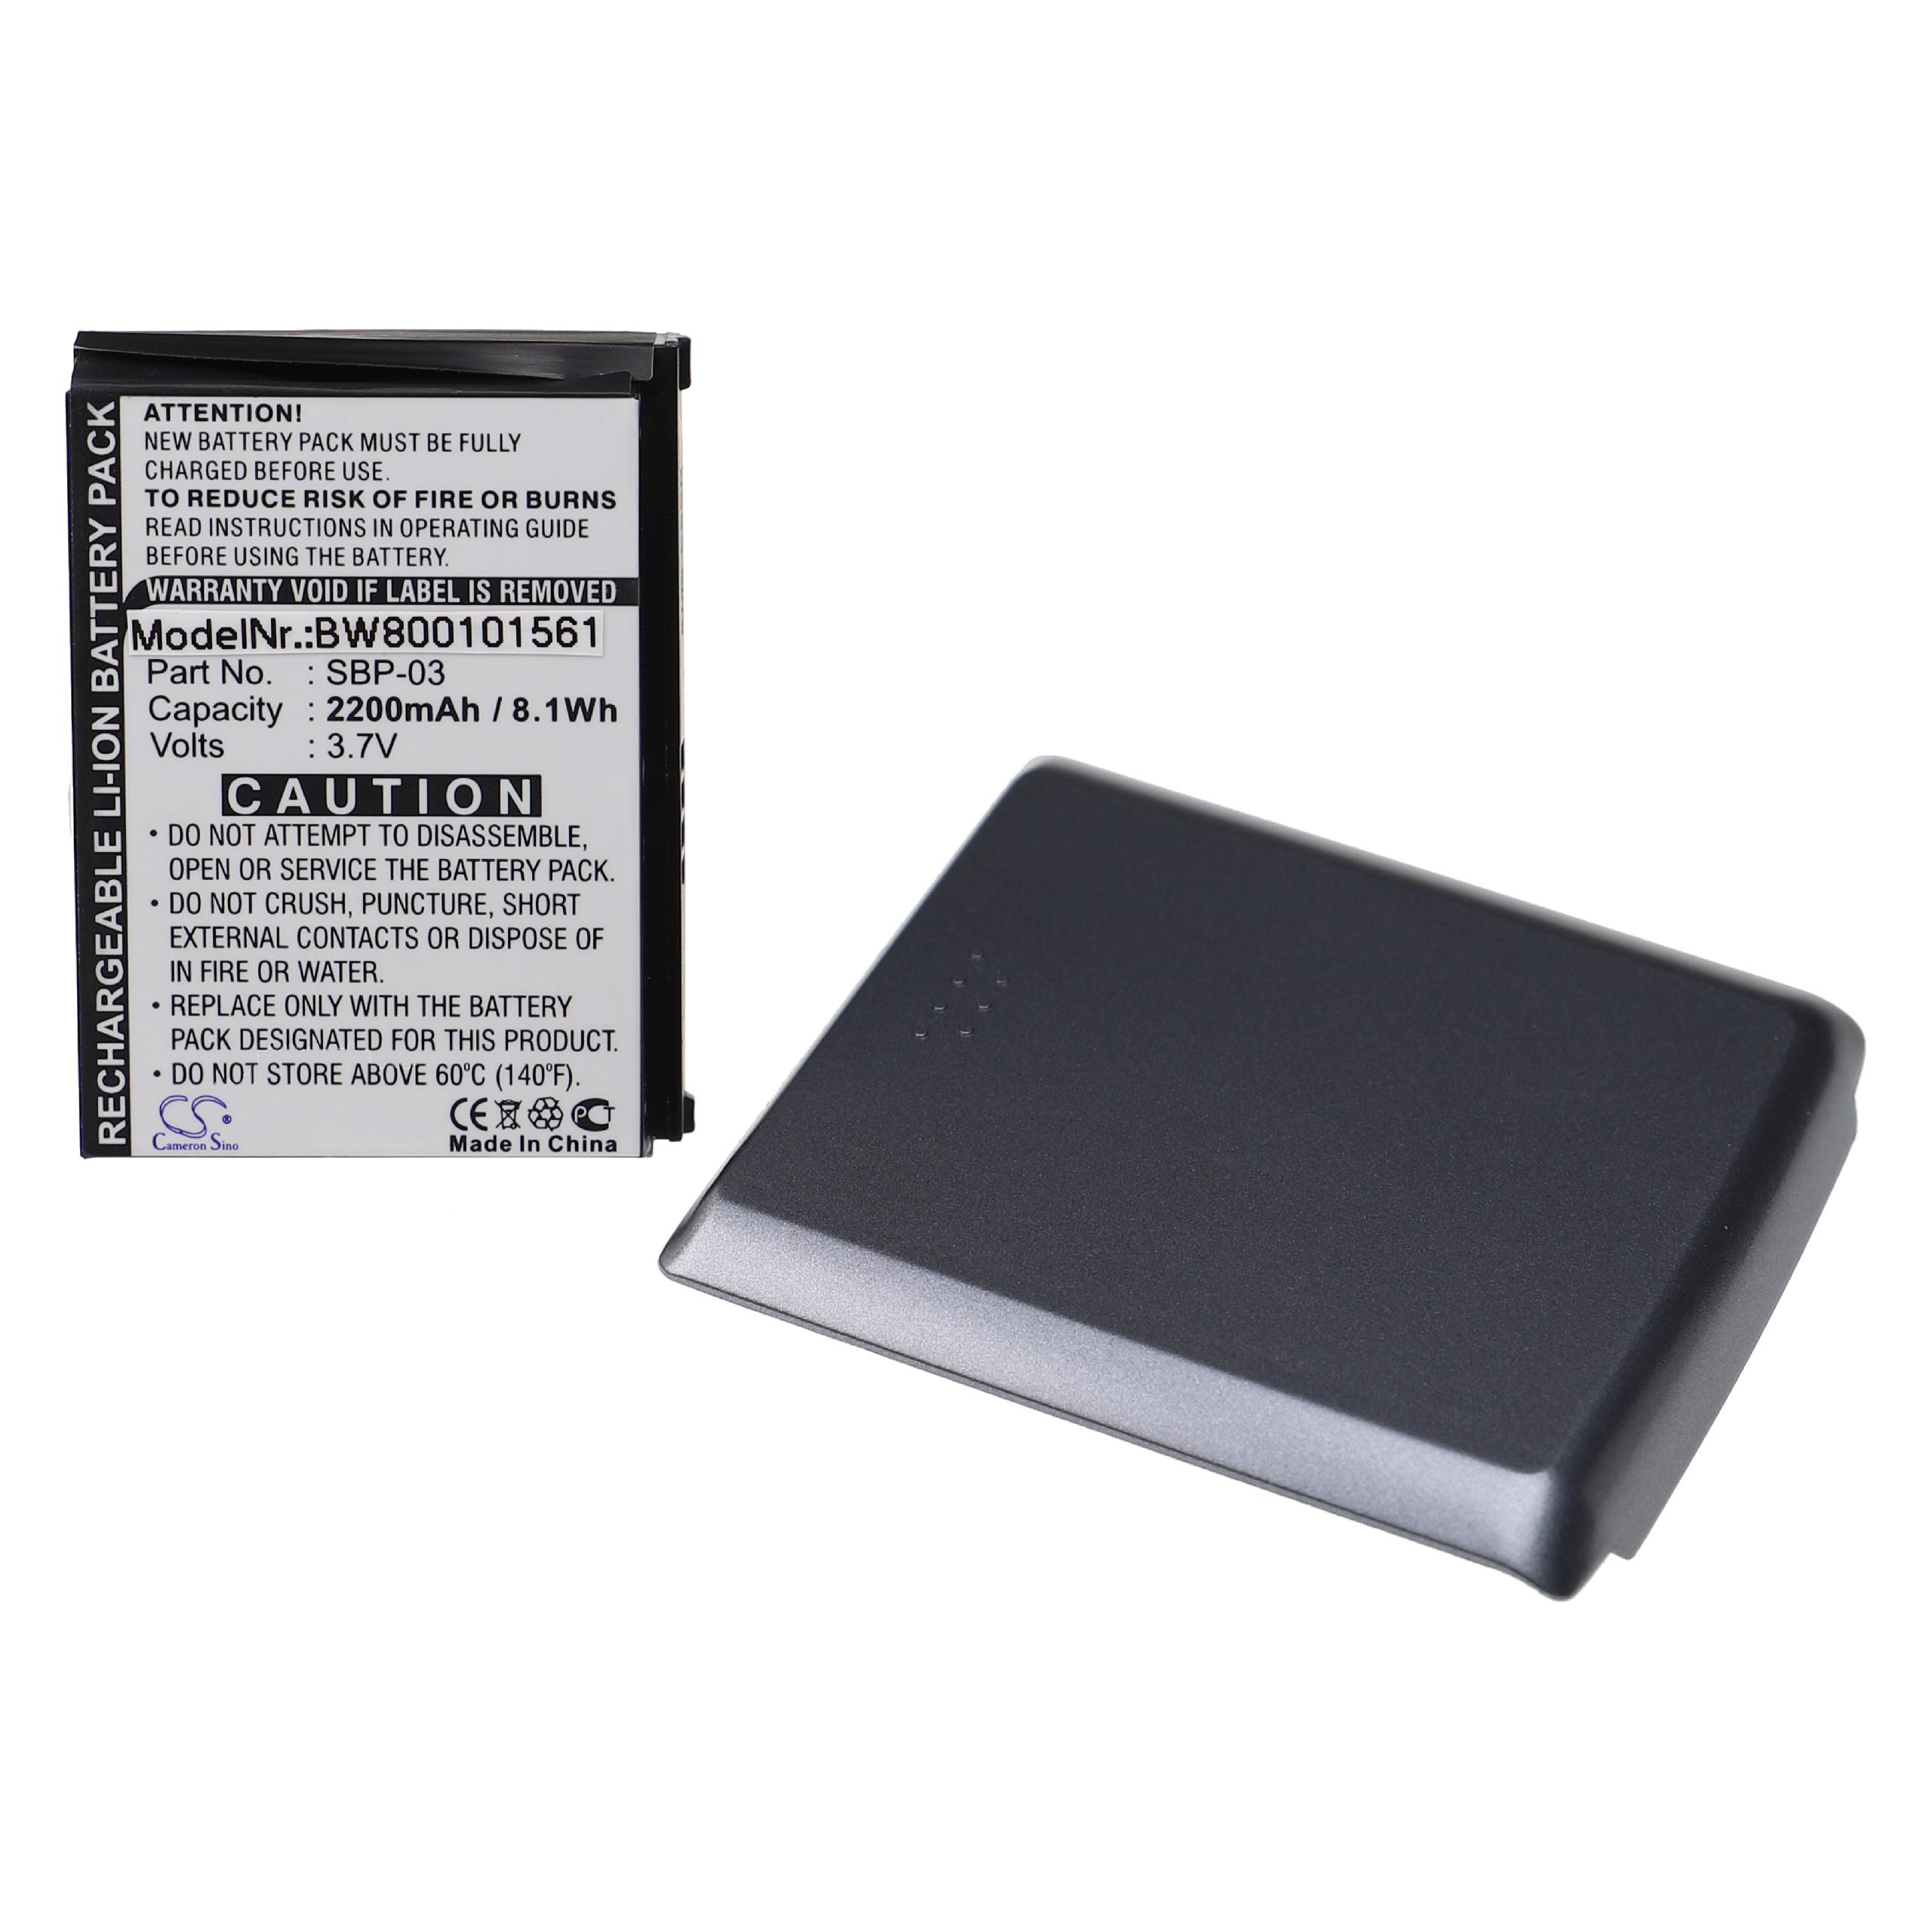 Batterie remplace Asus SBP-03 pour tablette - 2200mAh 3,7V Li-ion